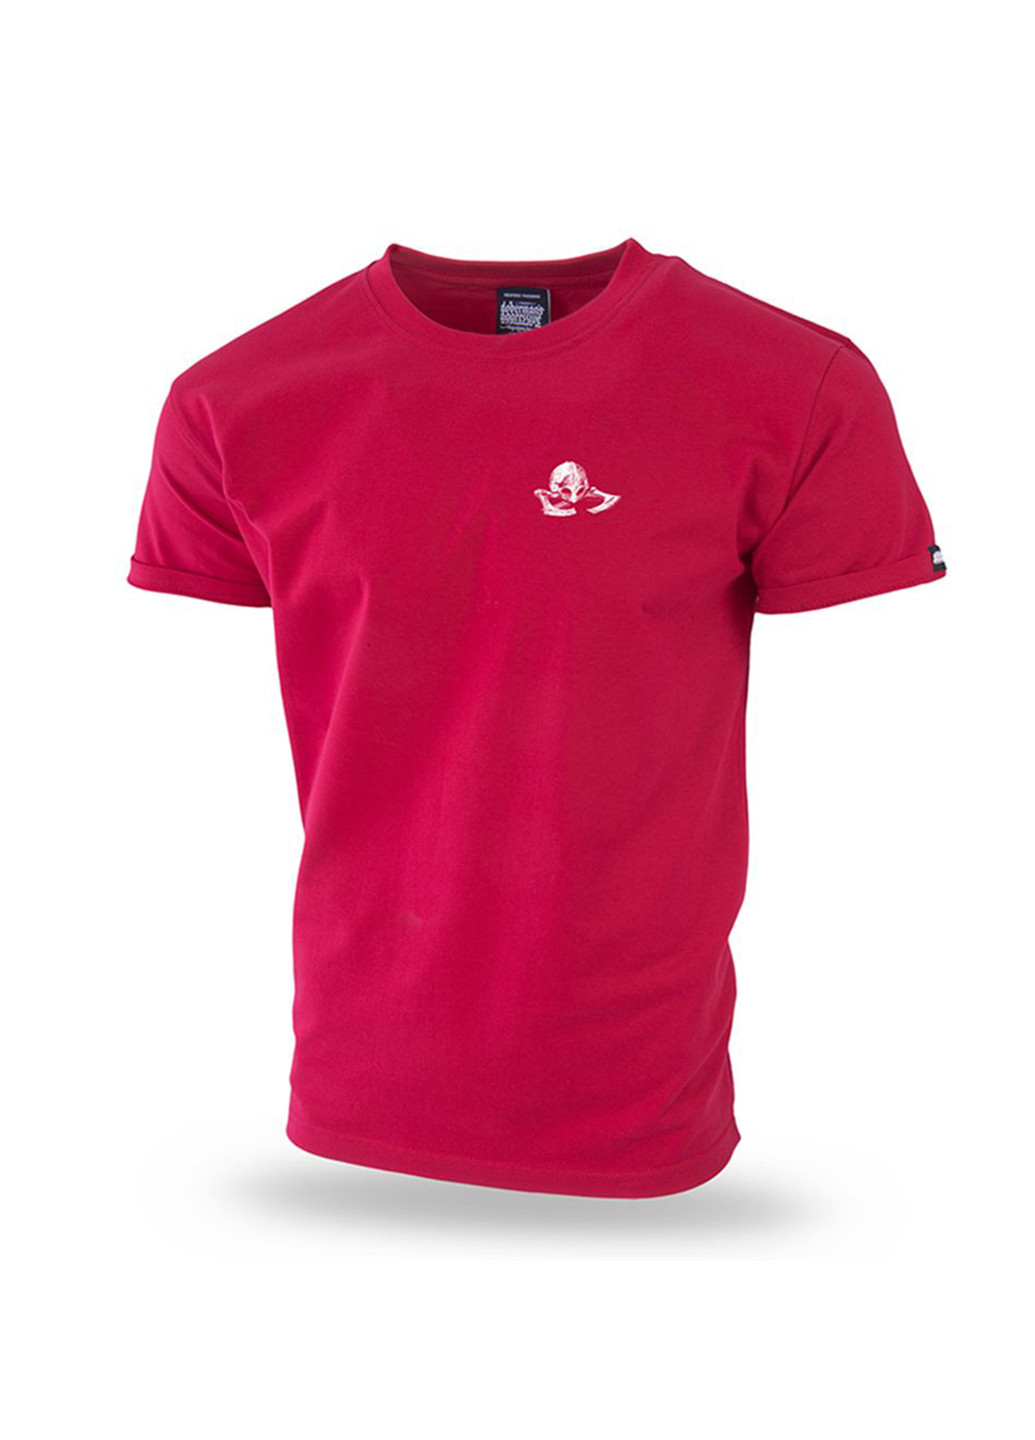 Красная футболка dobermans hatchet ts182rd Dobermans Aggressive